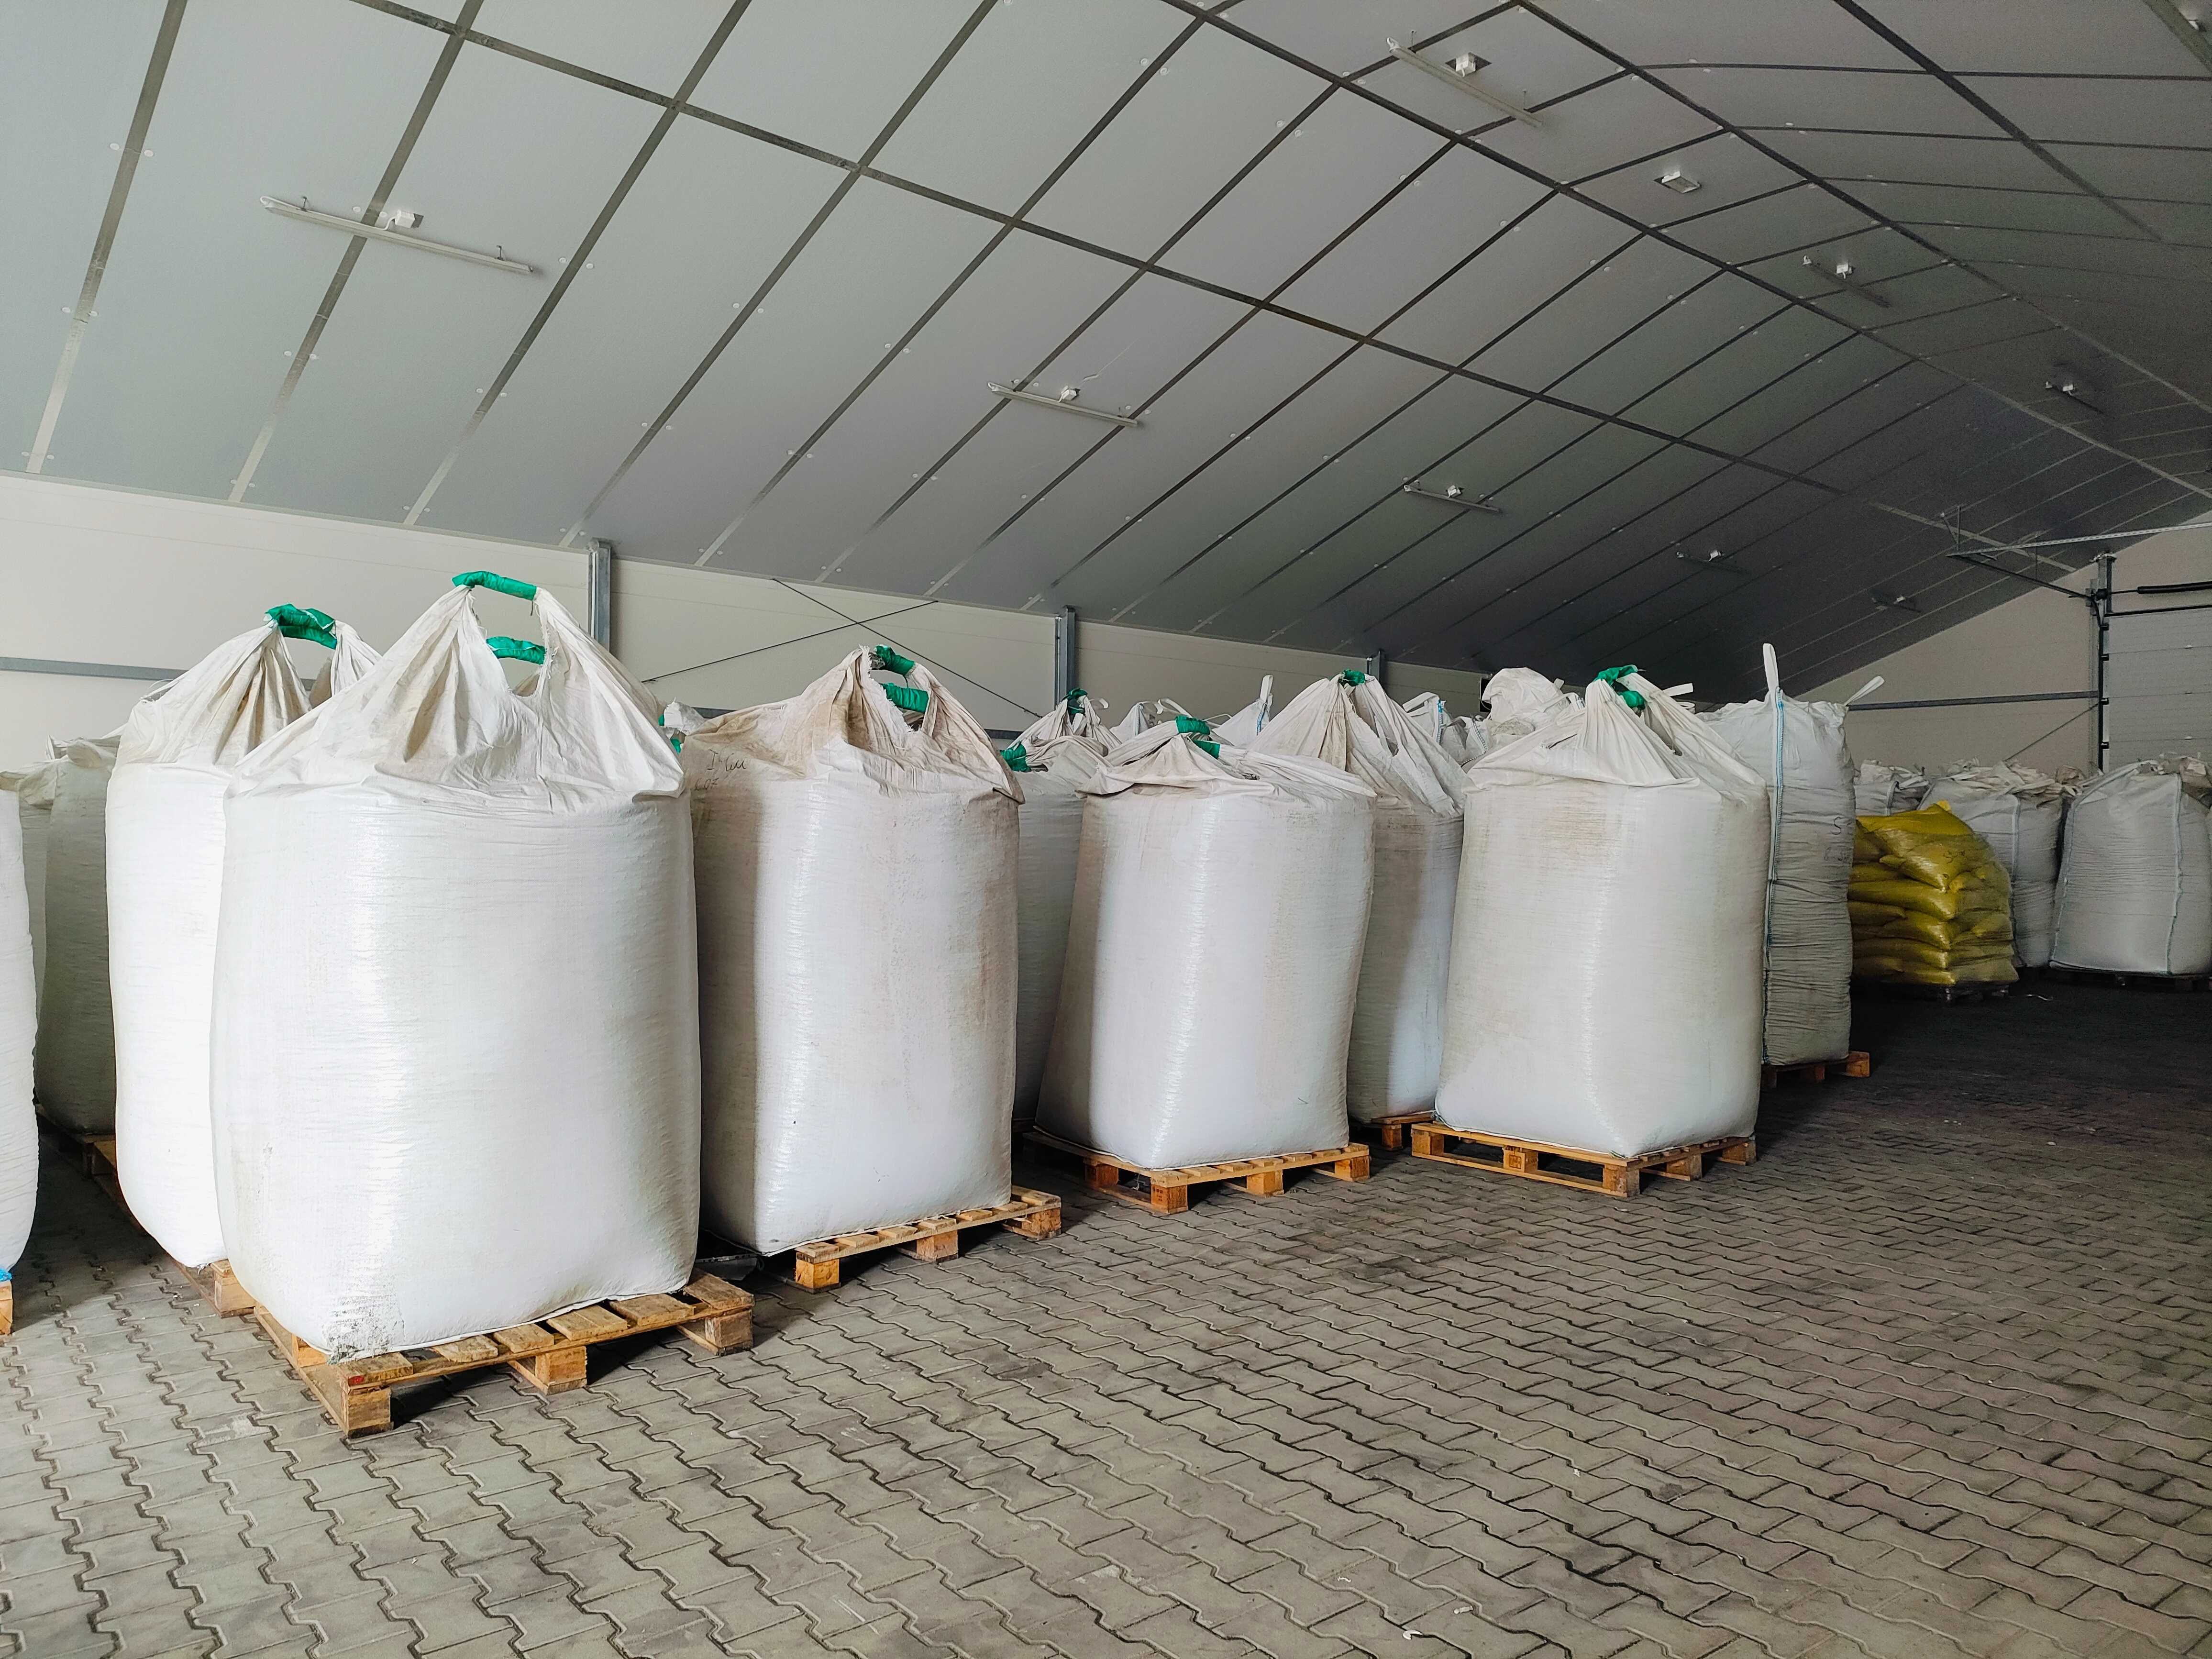 Śruta sojowa HI PRO 46% - big-bag / worki 40kg - dostawa od 1 tony